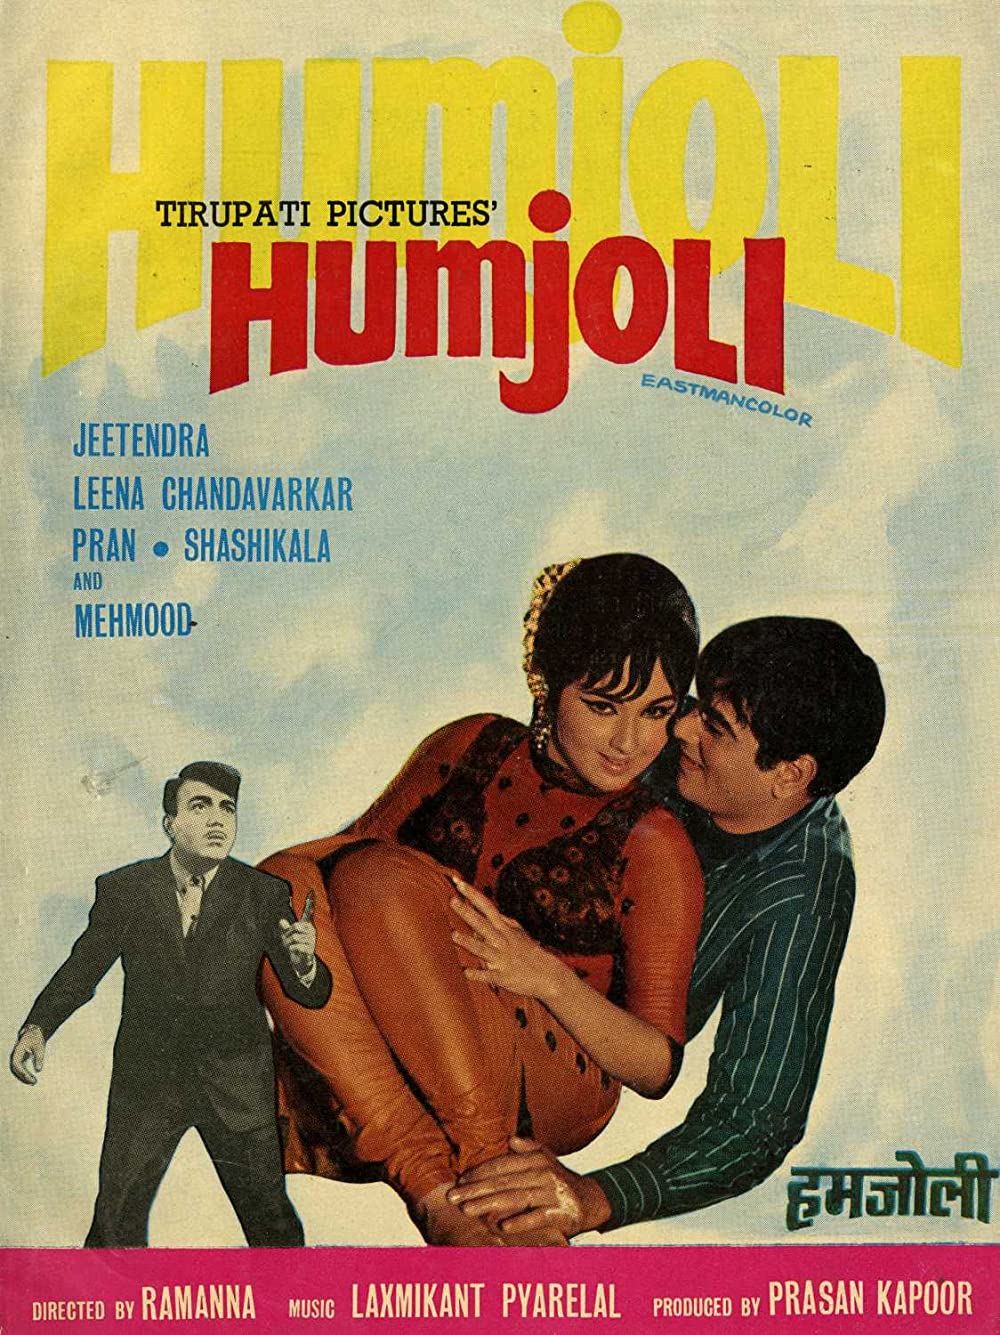 Humjoli Poster